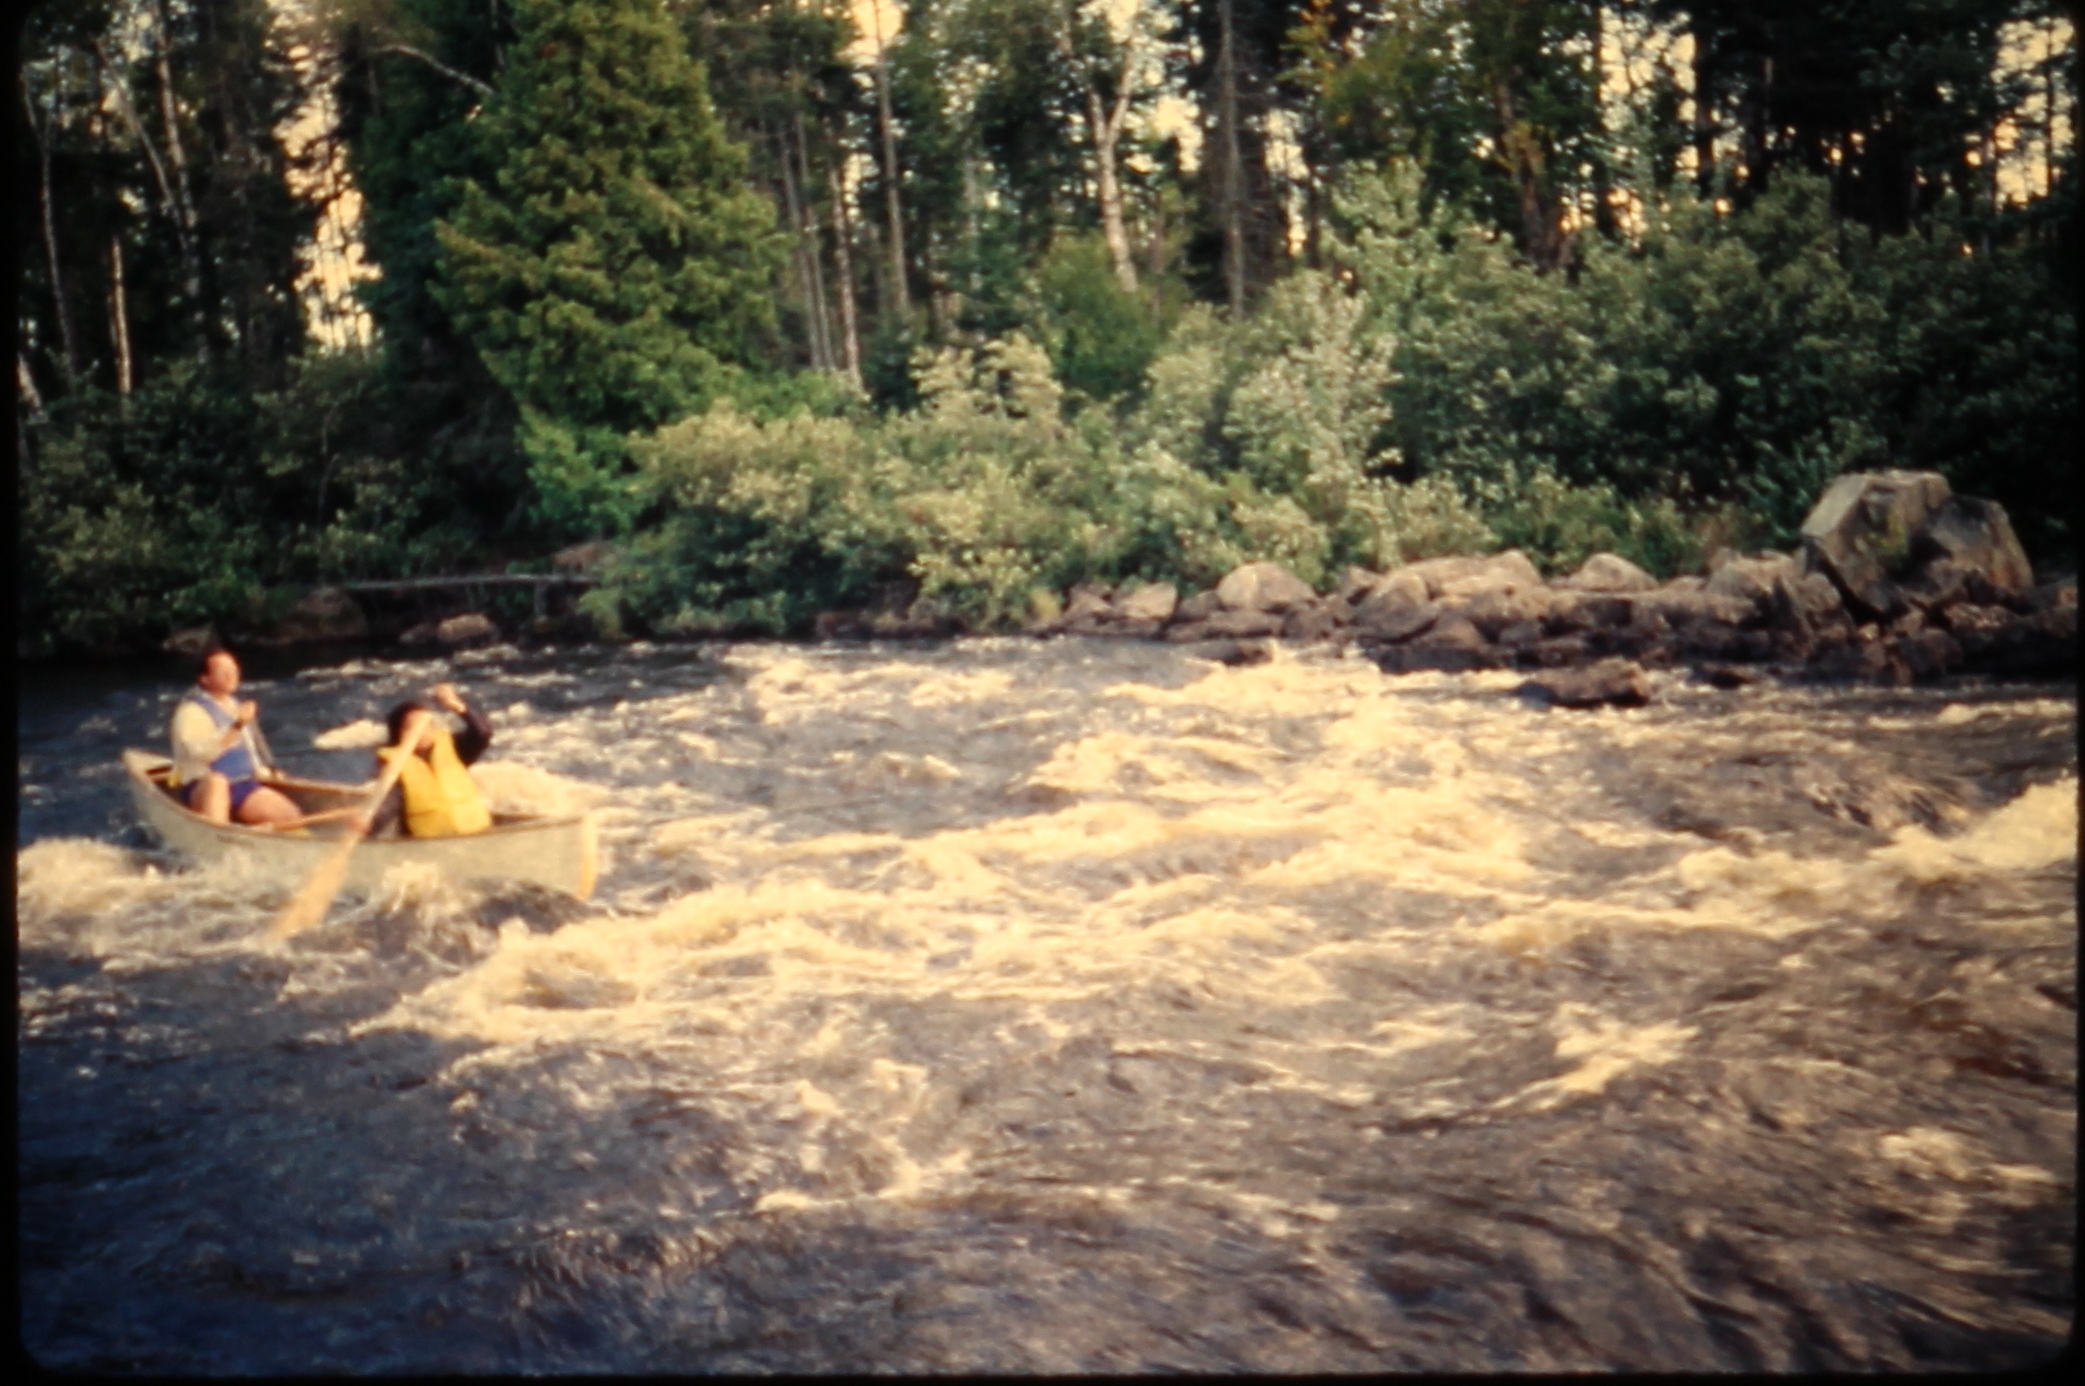 19890903.10 - USA ME -- MooseRiver - Jerry Lakshmi - Moose River Rapids 3 - MB01T01B11S10.JPG